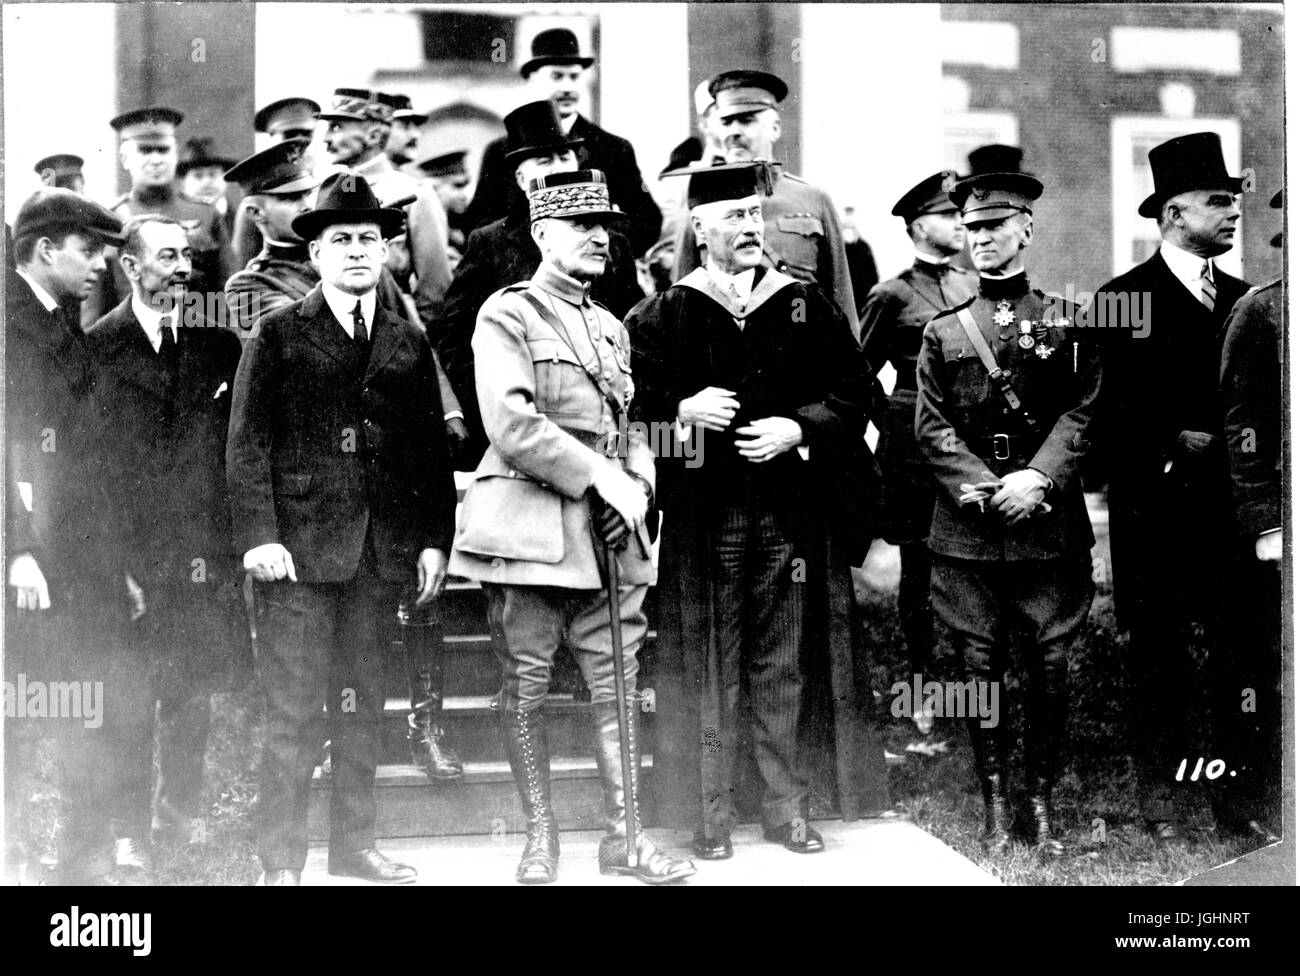 Ritratto di gruppo con Ferdinand Foch (centro), militare teorico e di ex Comandante supremo alleato, nel corso di una cerimonia di premiazione, 1921. Foto Stock